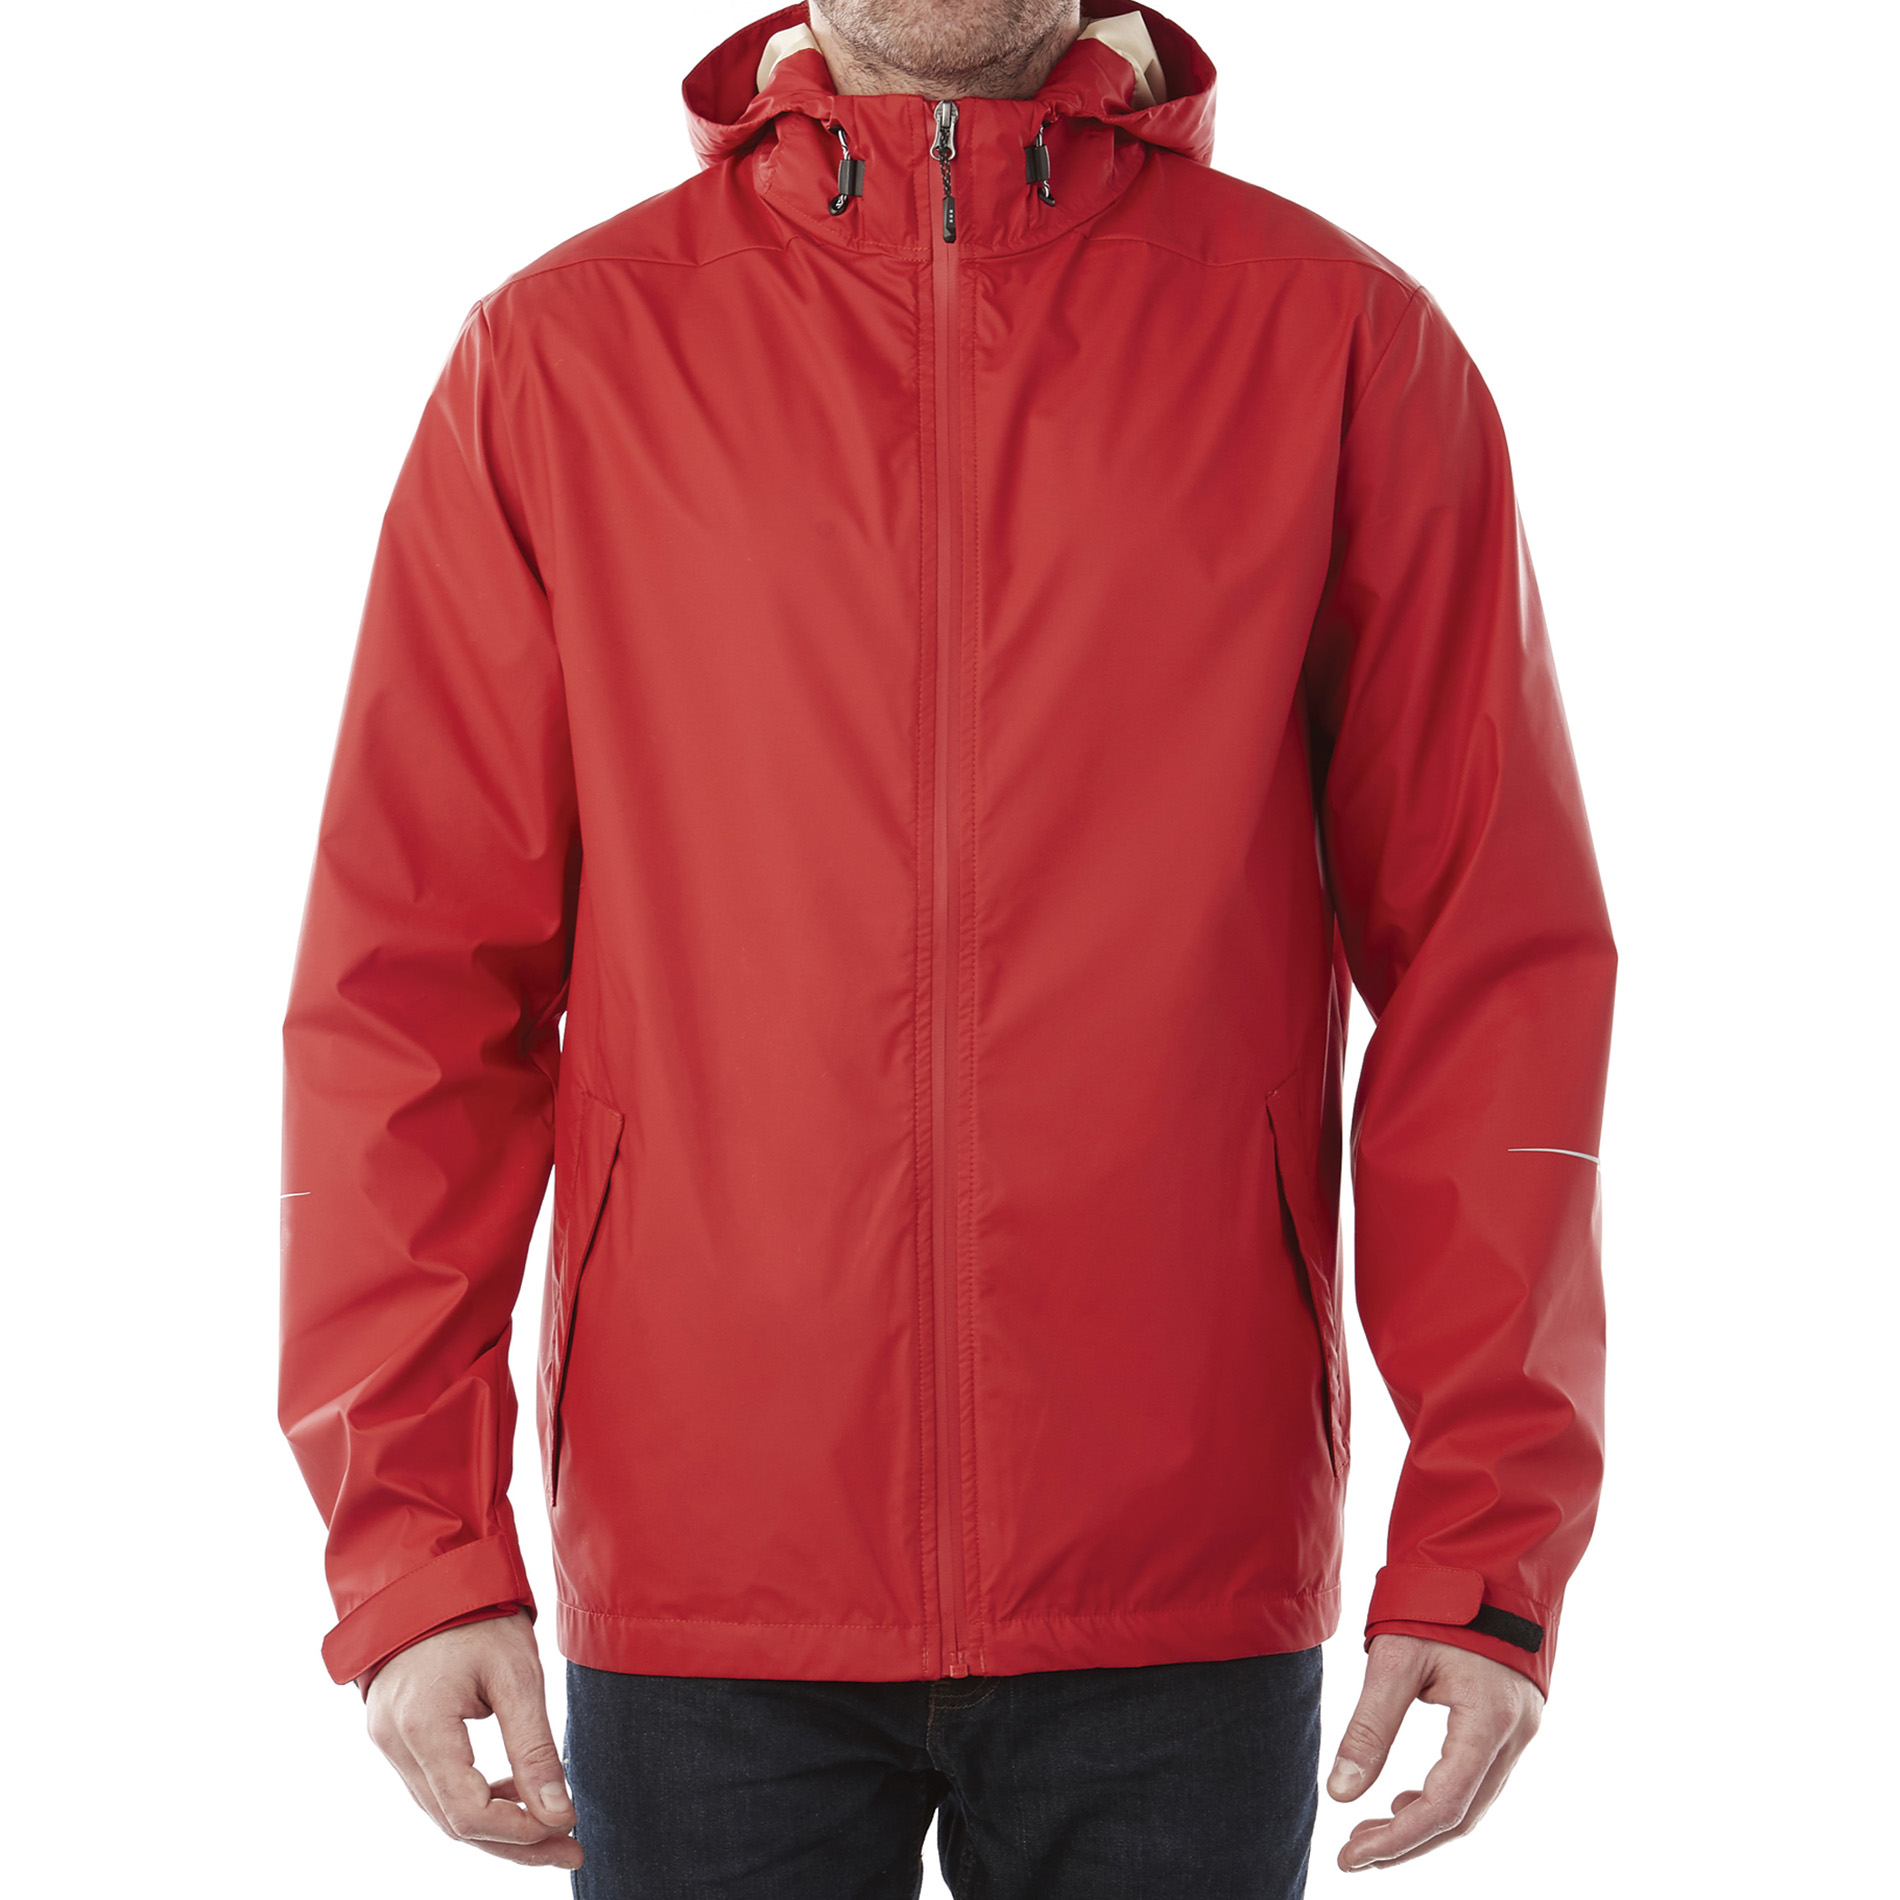 Trimark TM12713 - Men's CASCADE Rain Jacket